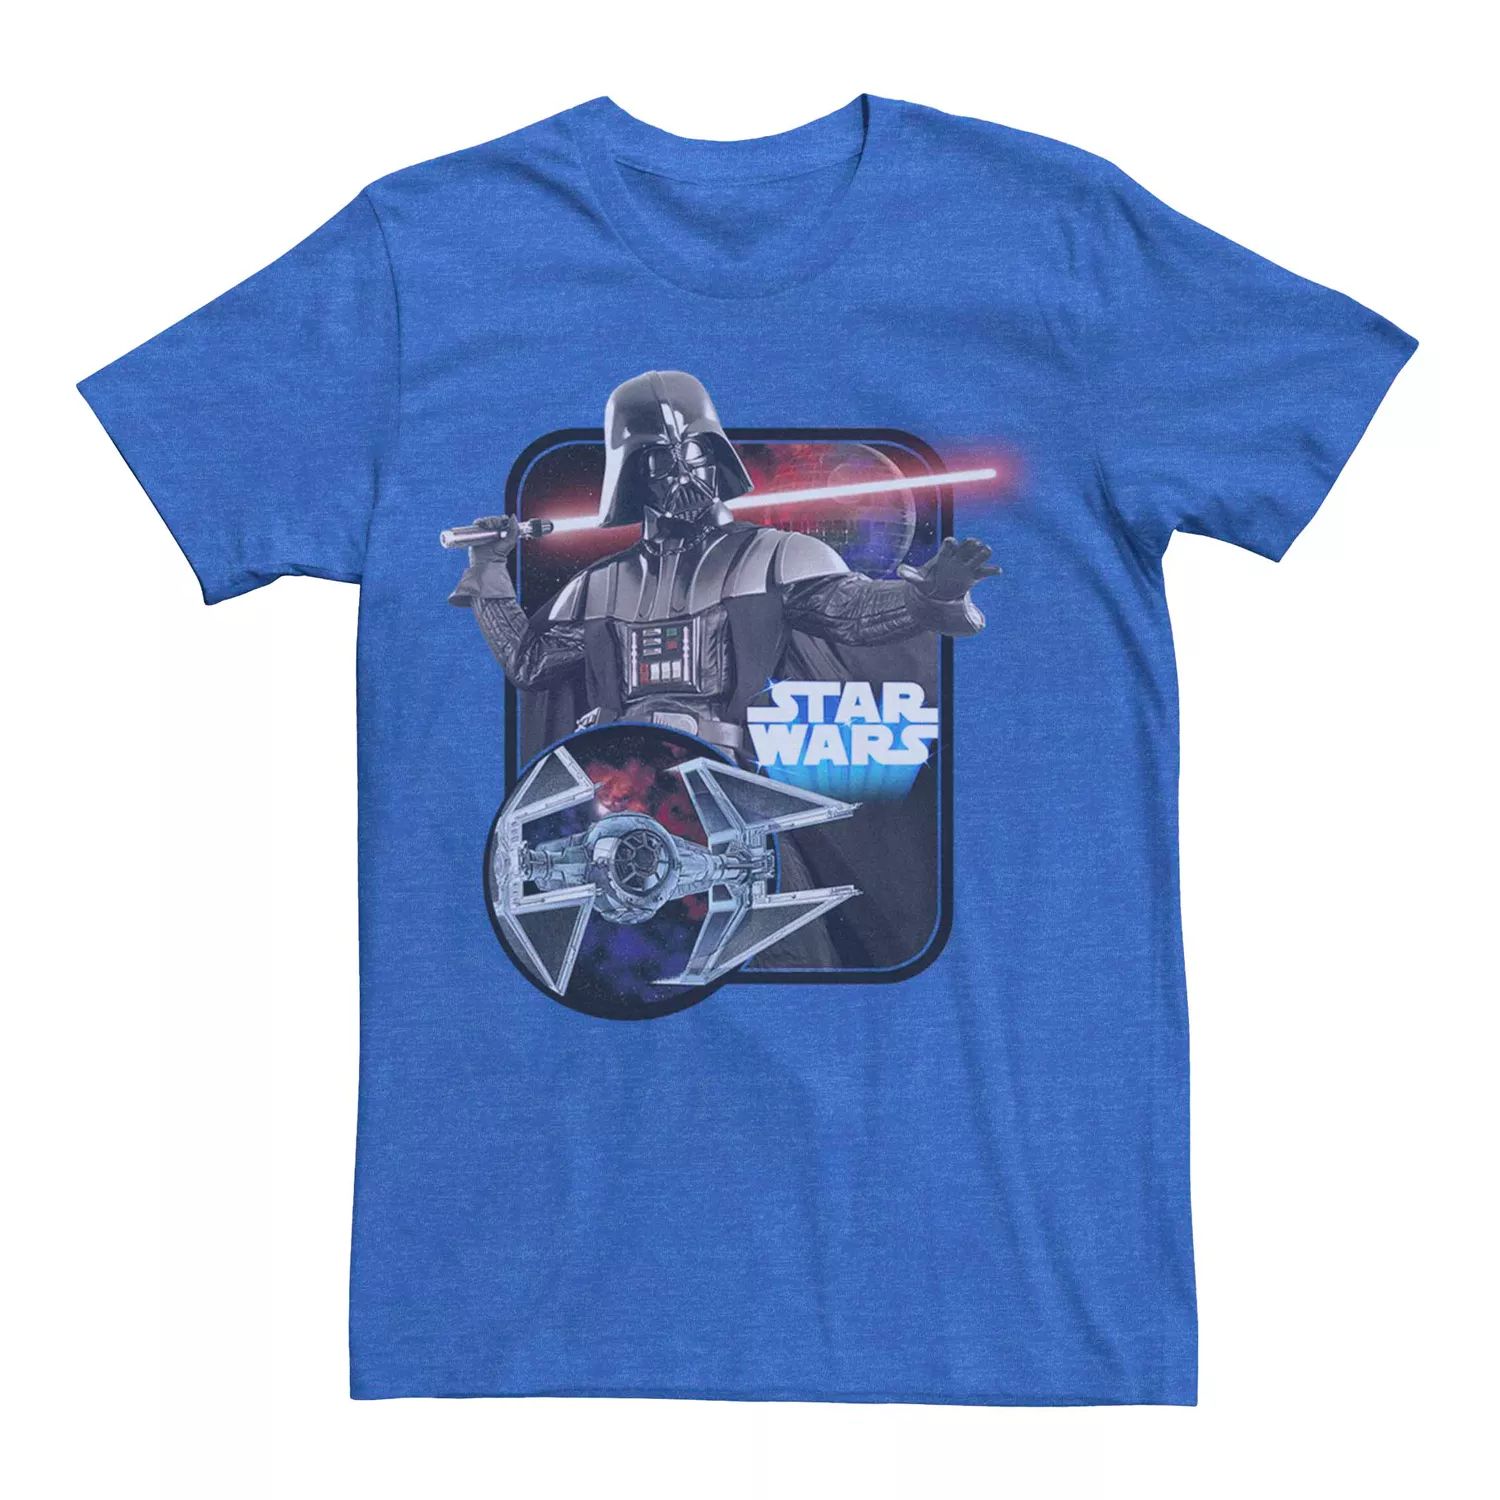 Мужская футболка с графическим рисунком и плакатом «Звездные войны Дарт Вейдер» Licensed Character